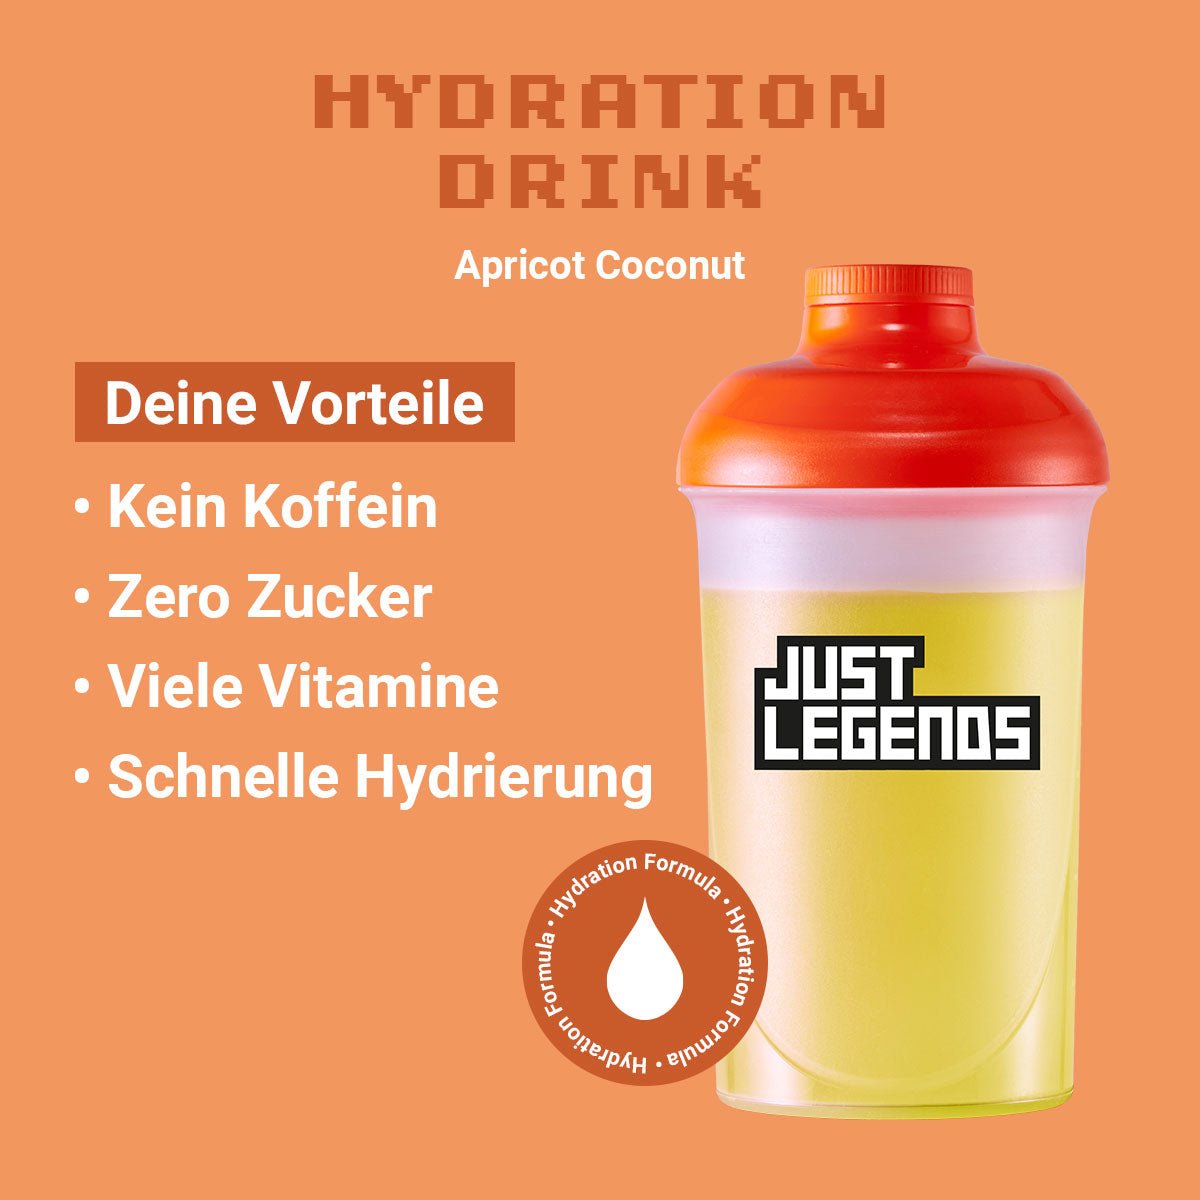 Just Legends Hydration Drink Apricot Coconut | Funktionaler, veganer Hydration Drink auf Pulverbasis ohne Zucker, mit wenig Kalorien, vielen Vitaminen und natürlichen Aromen.